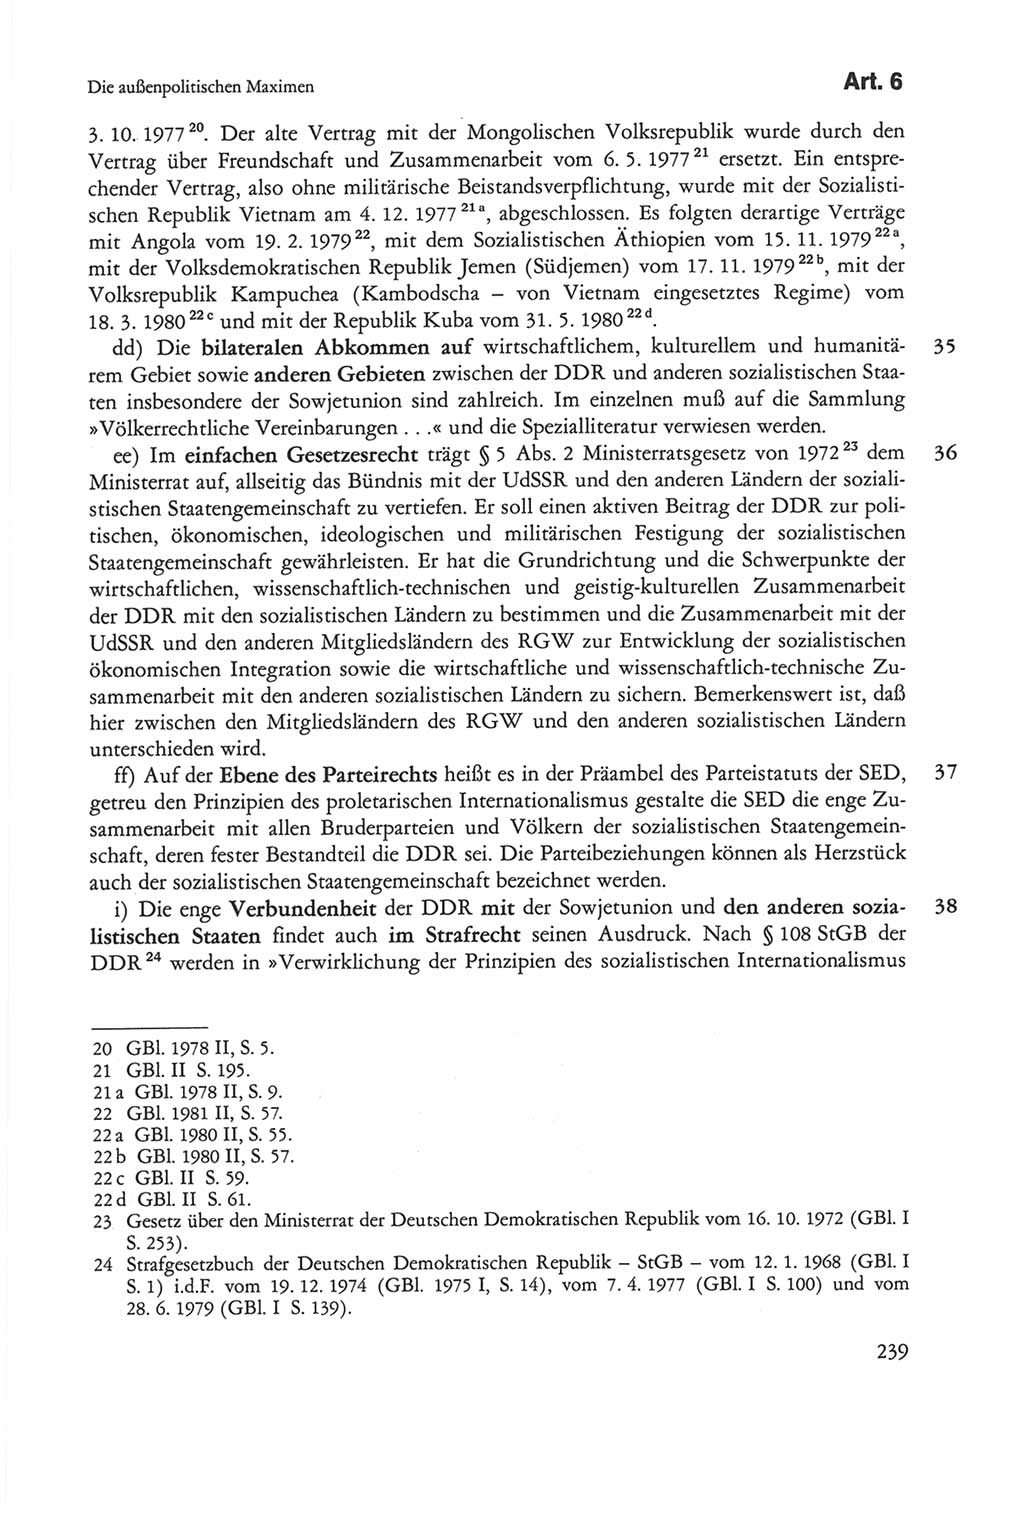 Die sozialistische Verfassung der Deutschen Demokratischen Republik (DDR), Kommentar mit einem Nachtrag 1997, Seite 239 (Soz. Verf. DDR Komm. Nachtr. 1997, S. 239)